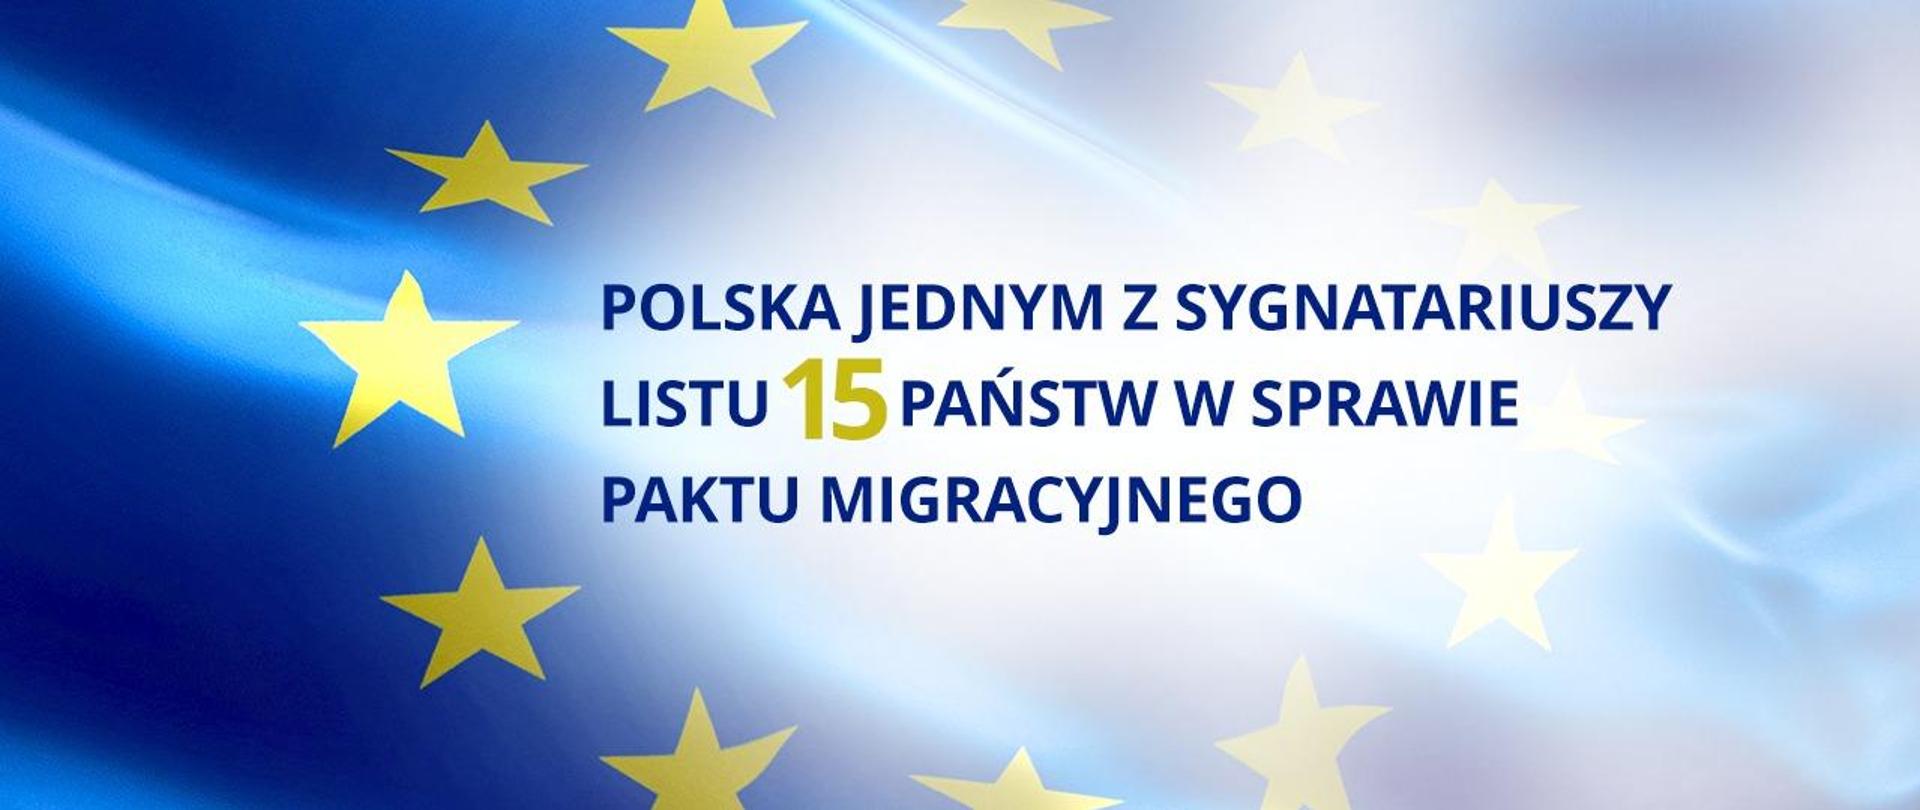 Tło grafiki stanowi flaga Unii Europejskiej. Na grafice jest napis: "Polska jednym z sygnatariuszy listu 15 państw w sprawie paktu migracyjnego".